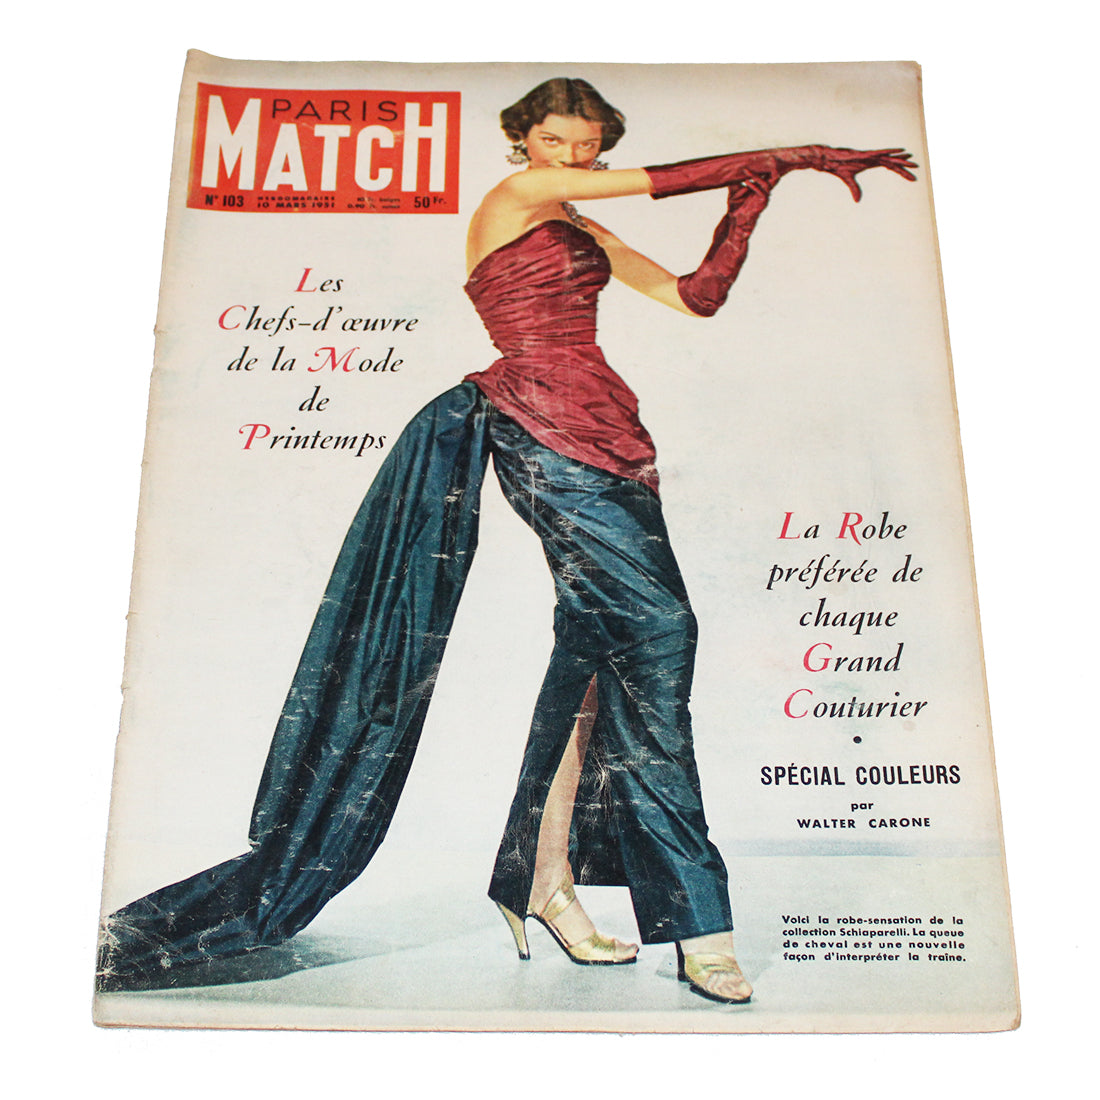 Magazine / revue Paris Match n° 103 du 10/03/1951 la mode de printemps